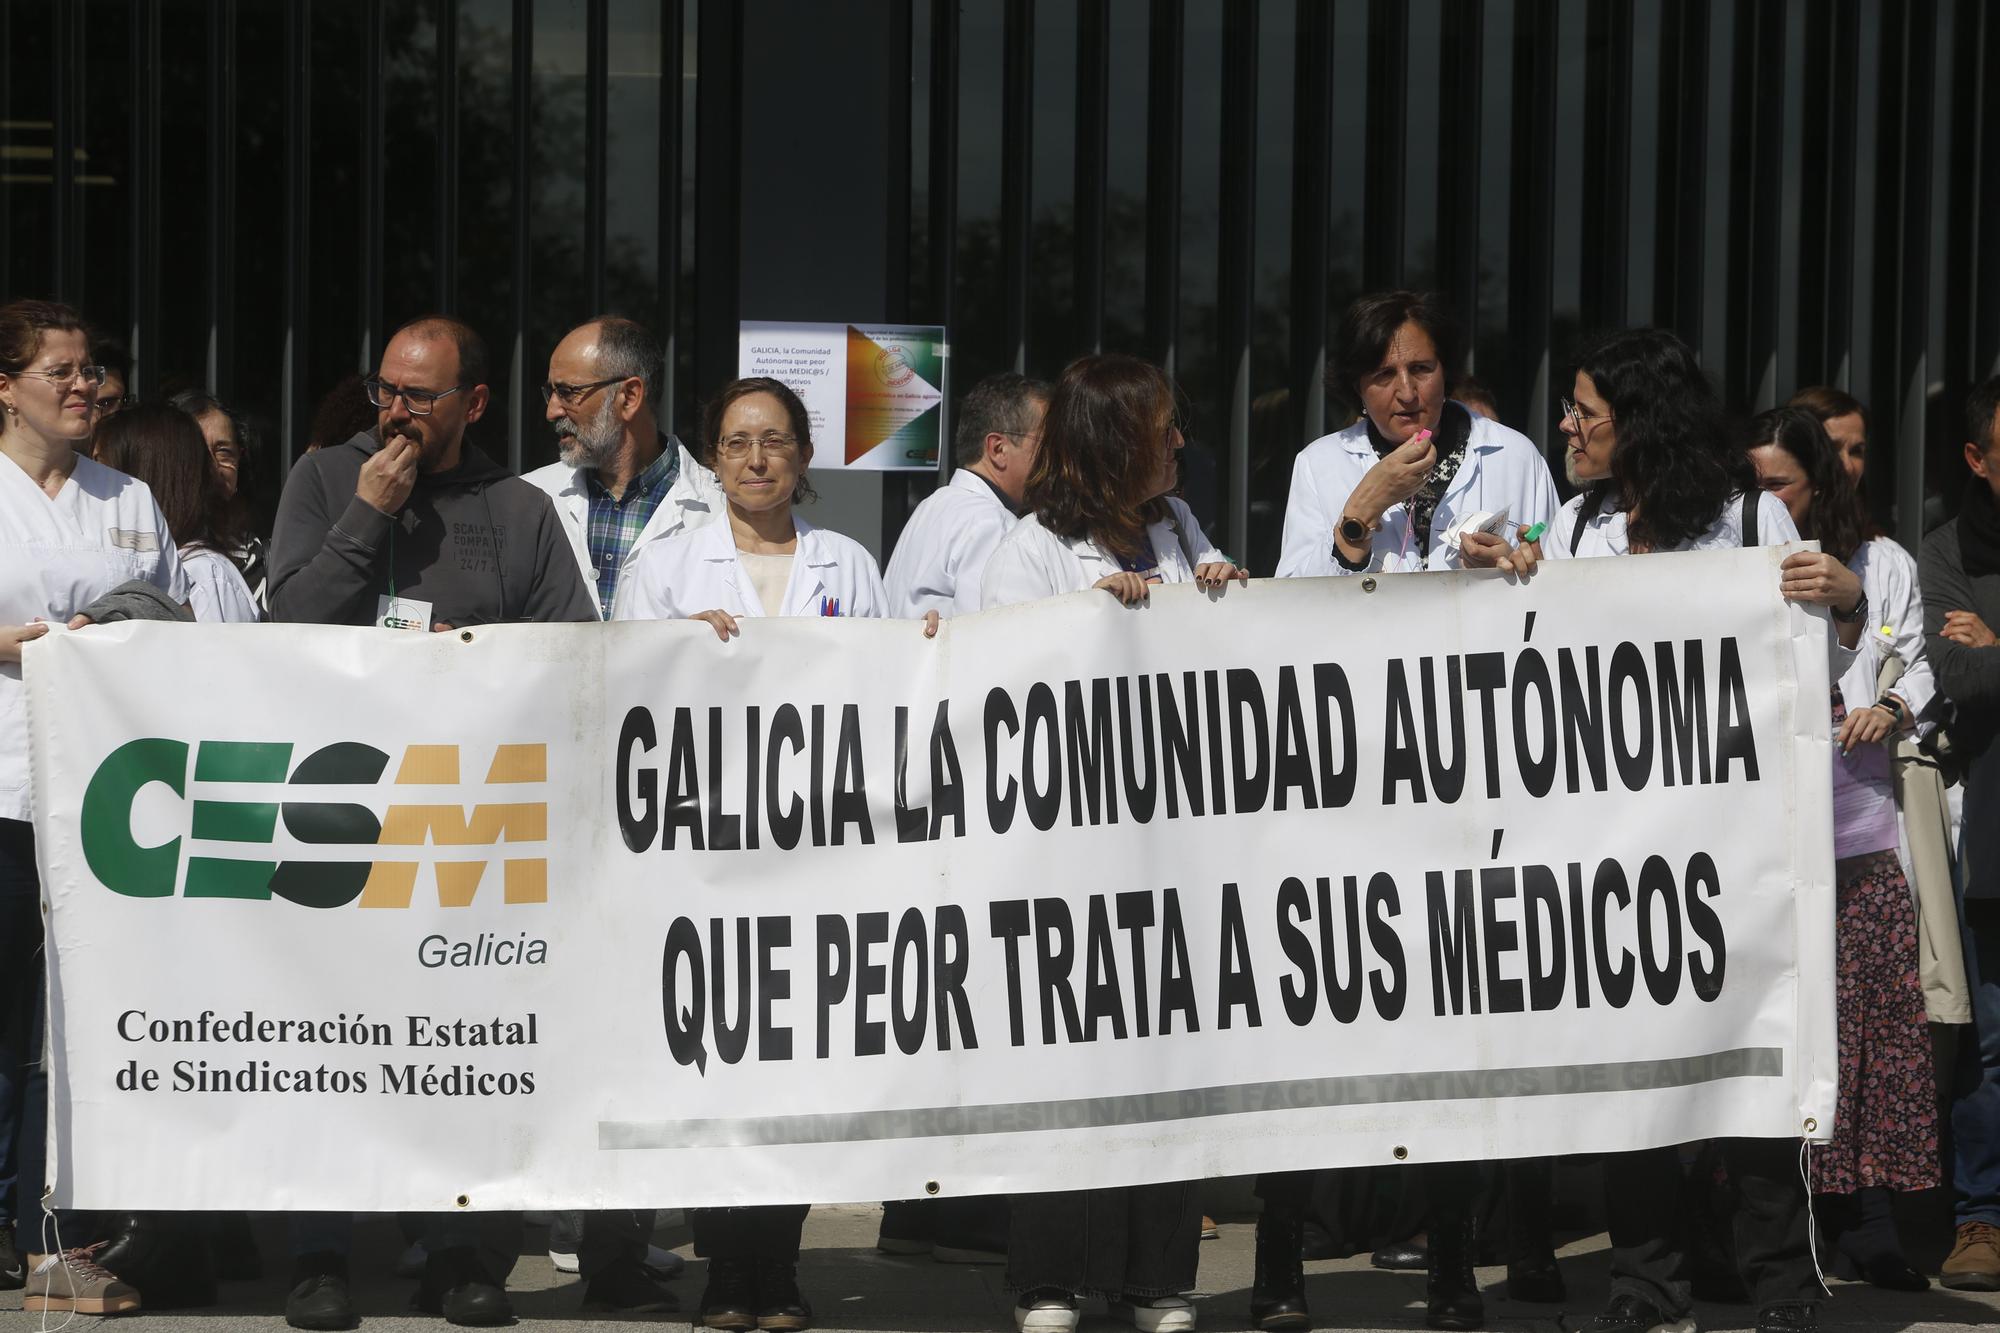 Huelga de médicos en Galicia: 200 facultativos protestan en A Coruña